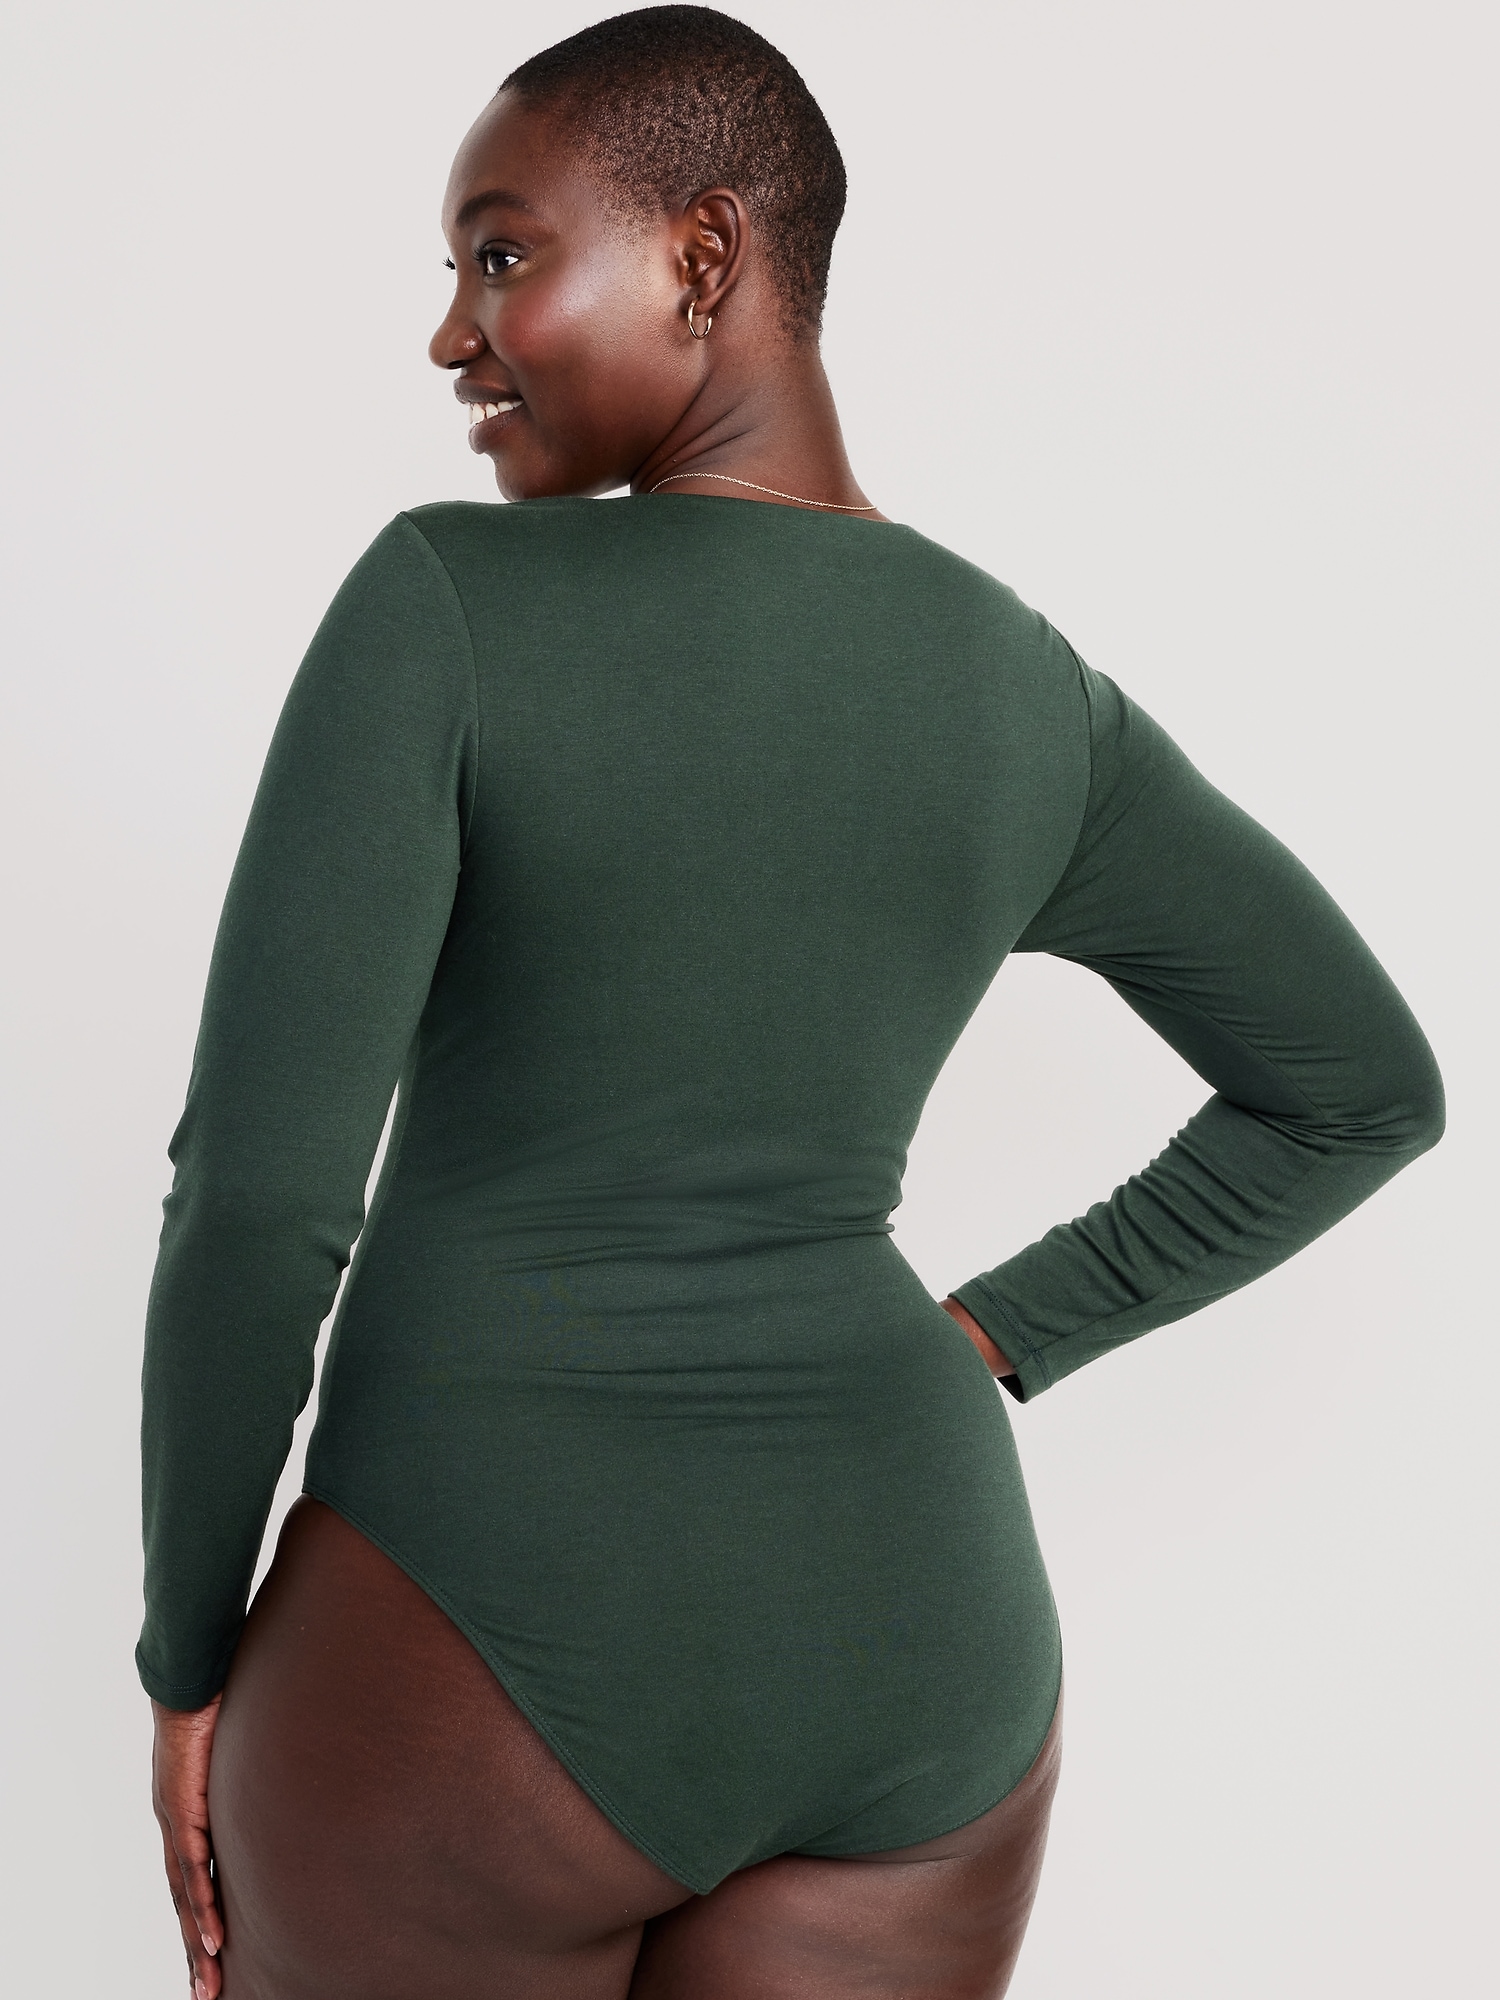 Green Bodysuit Long Sleeve Square Neck